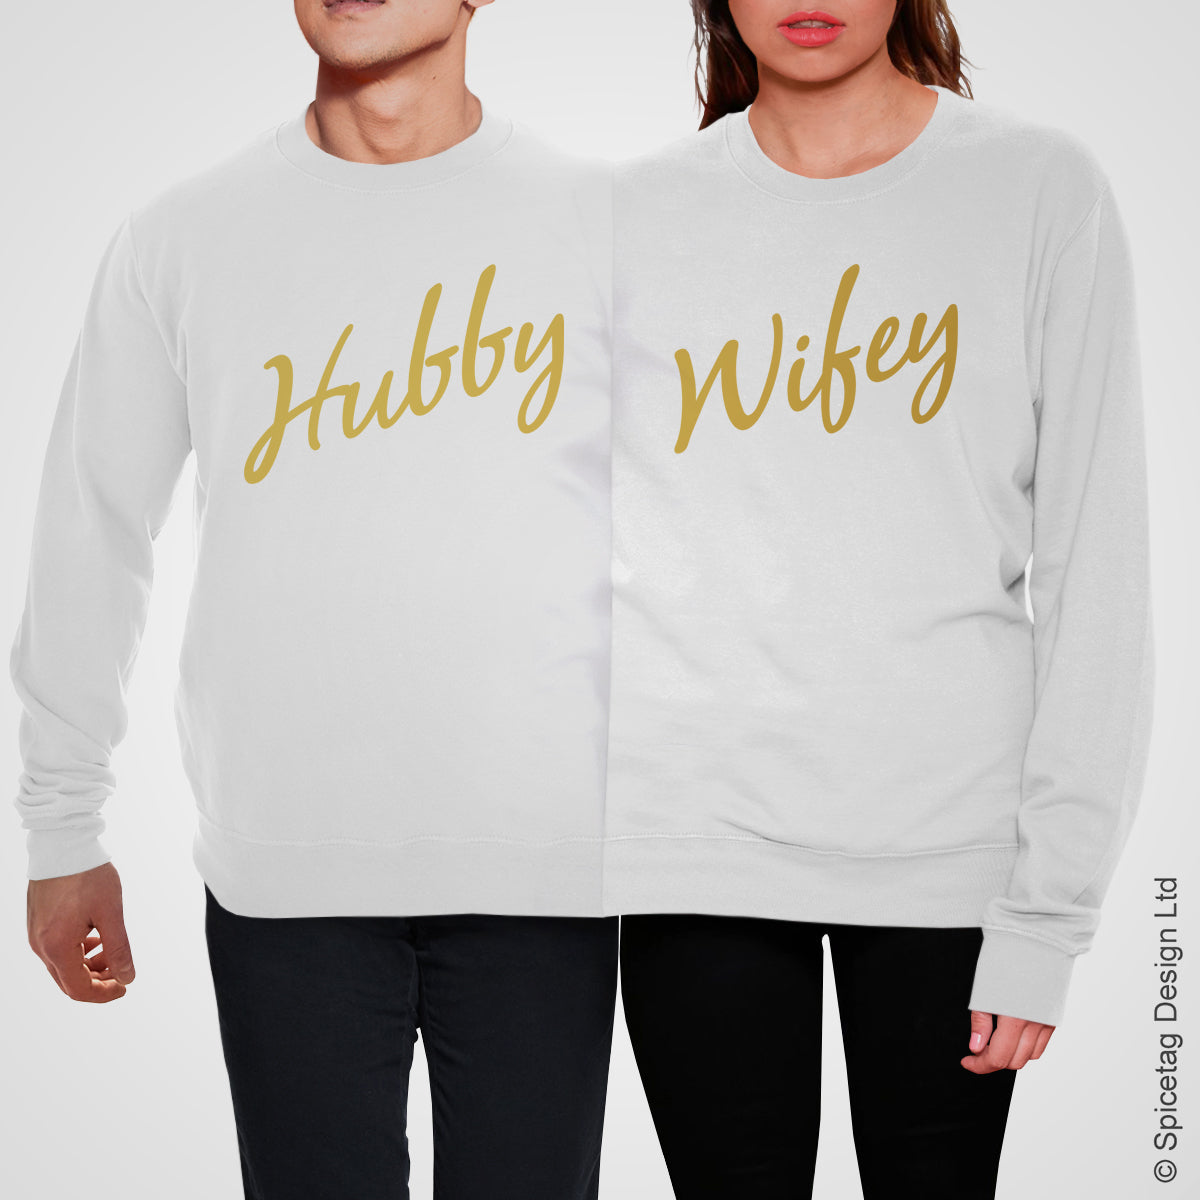 Hubby & Wifey Double Jumper